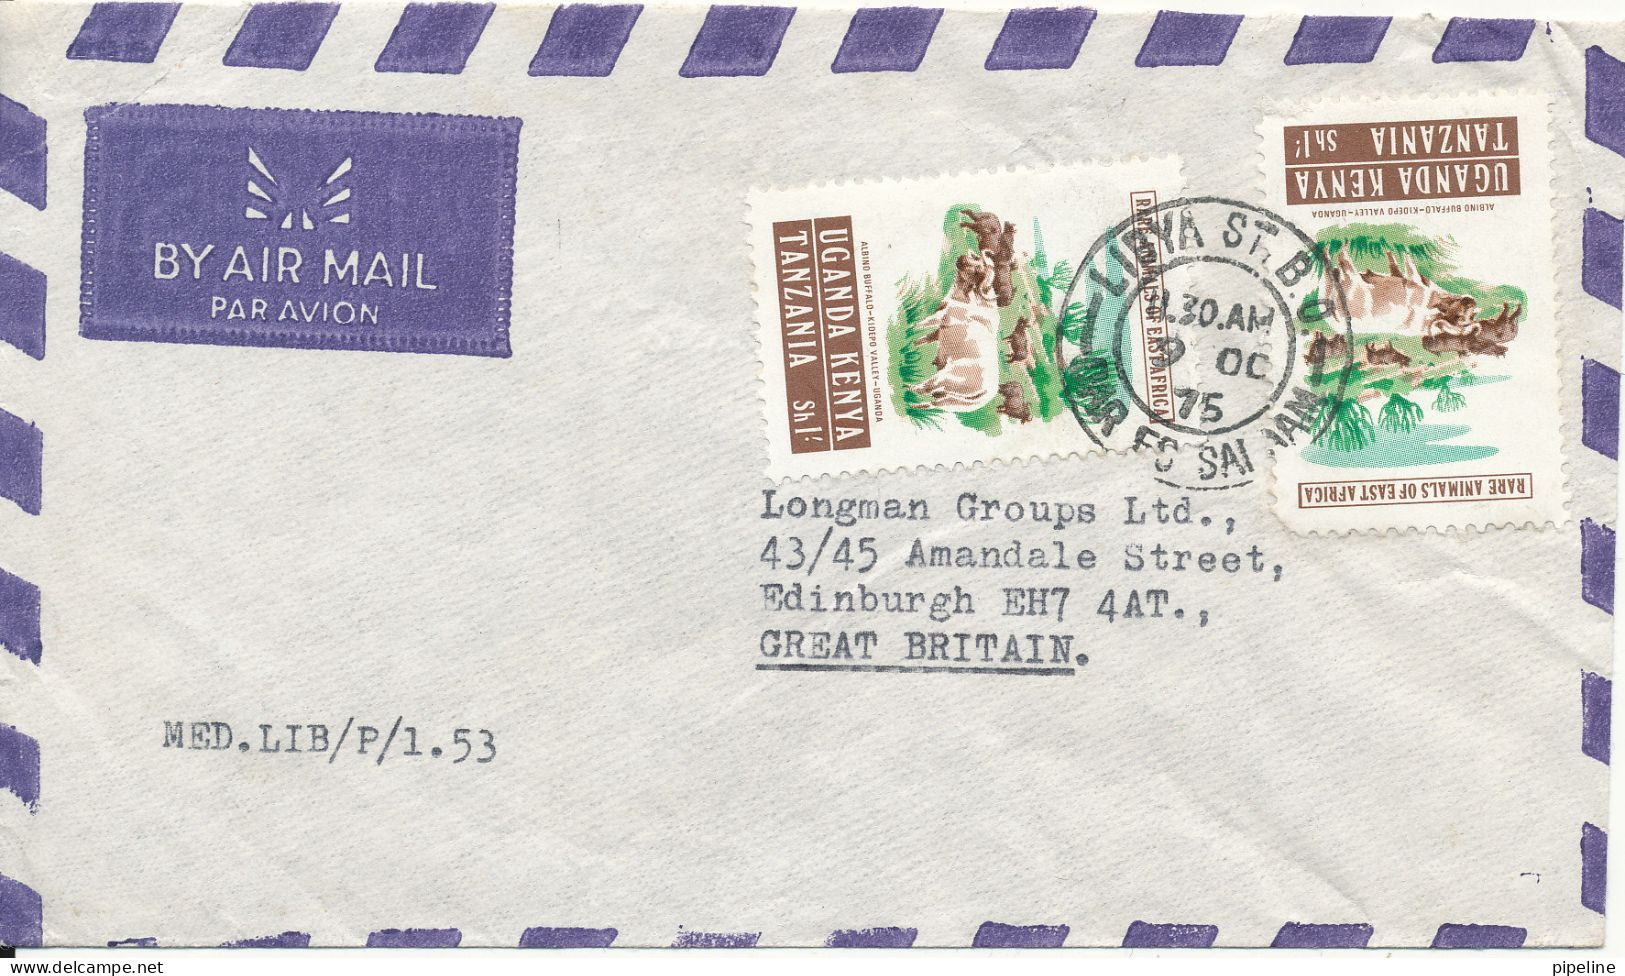 Kenya Uganda Tanzania Air Mail Cover Sent To England 9-10-1975 See The Postmark (1 Of The Stamps Is Damaged) - Kenya, Uganda & Tanzania